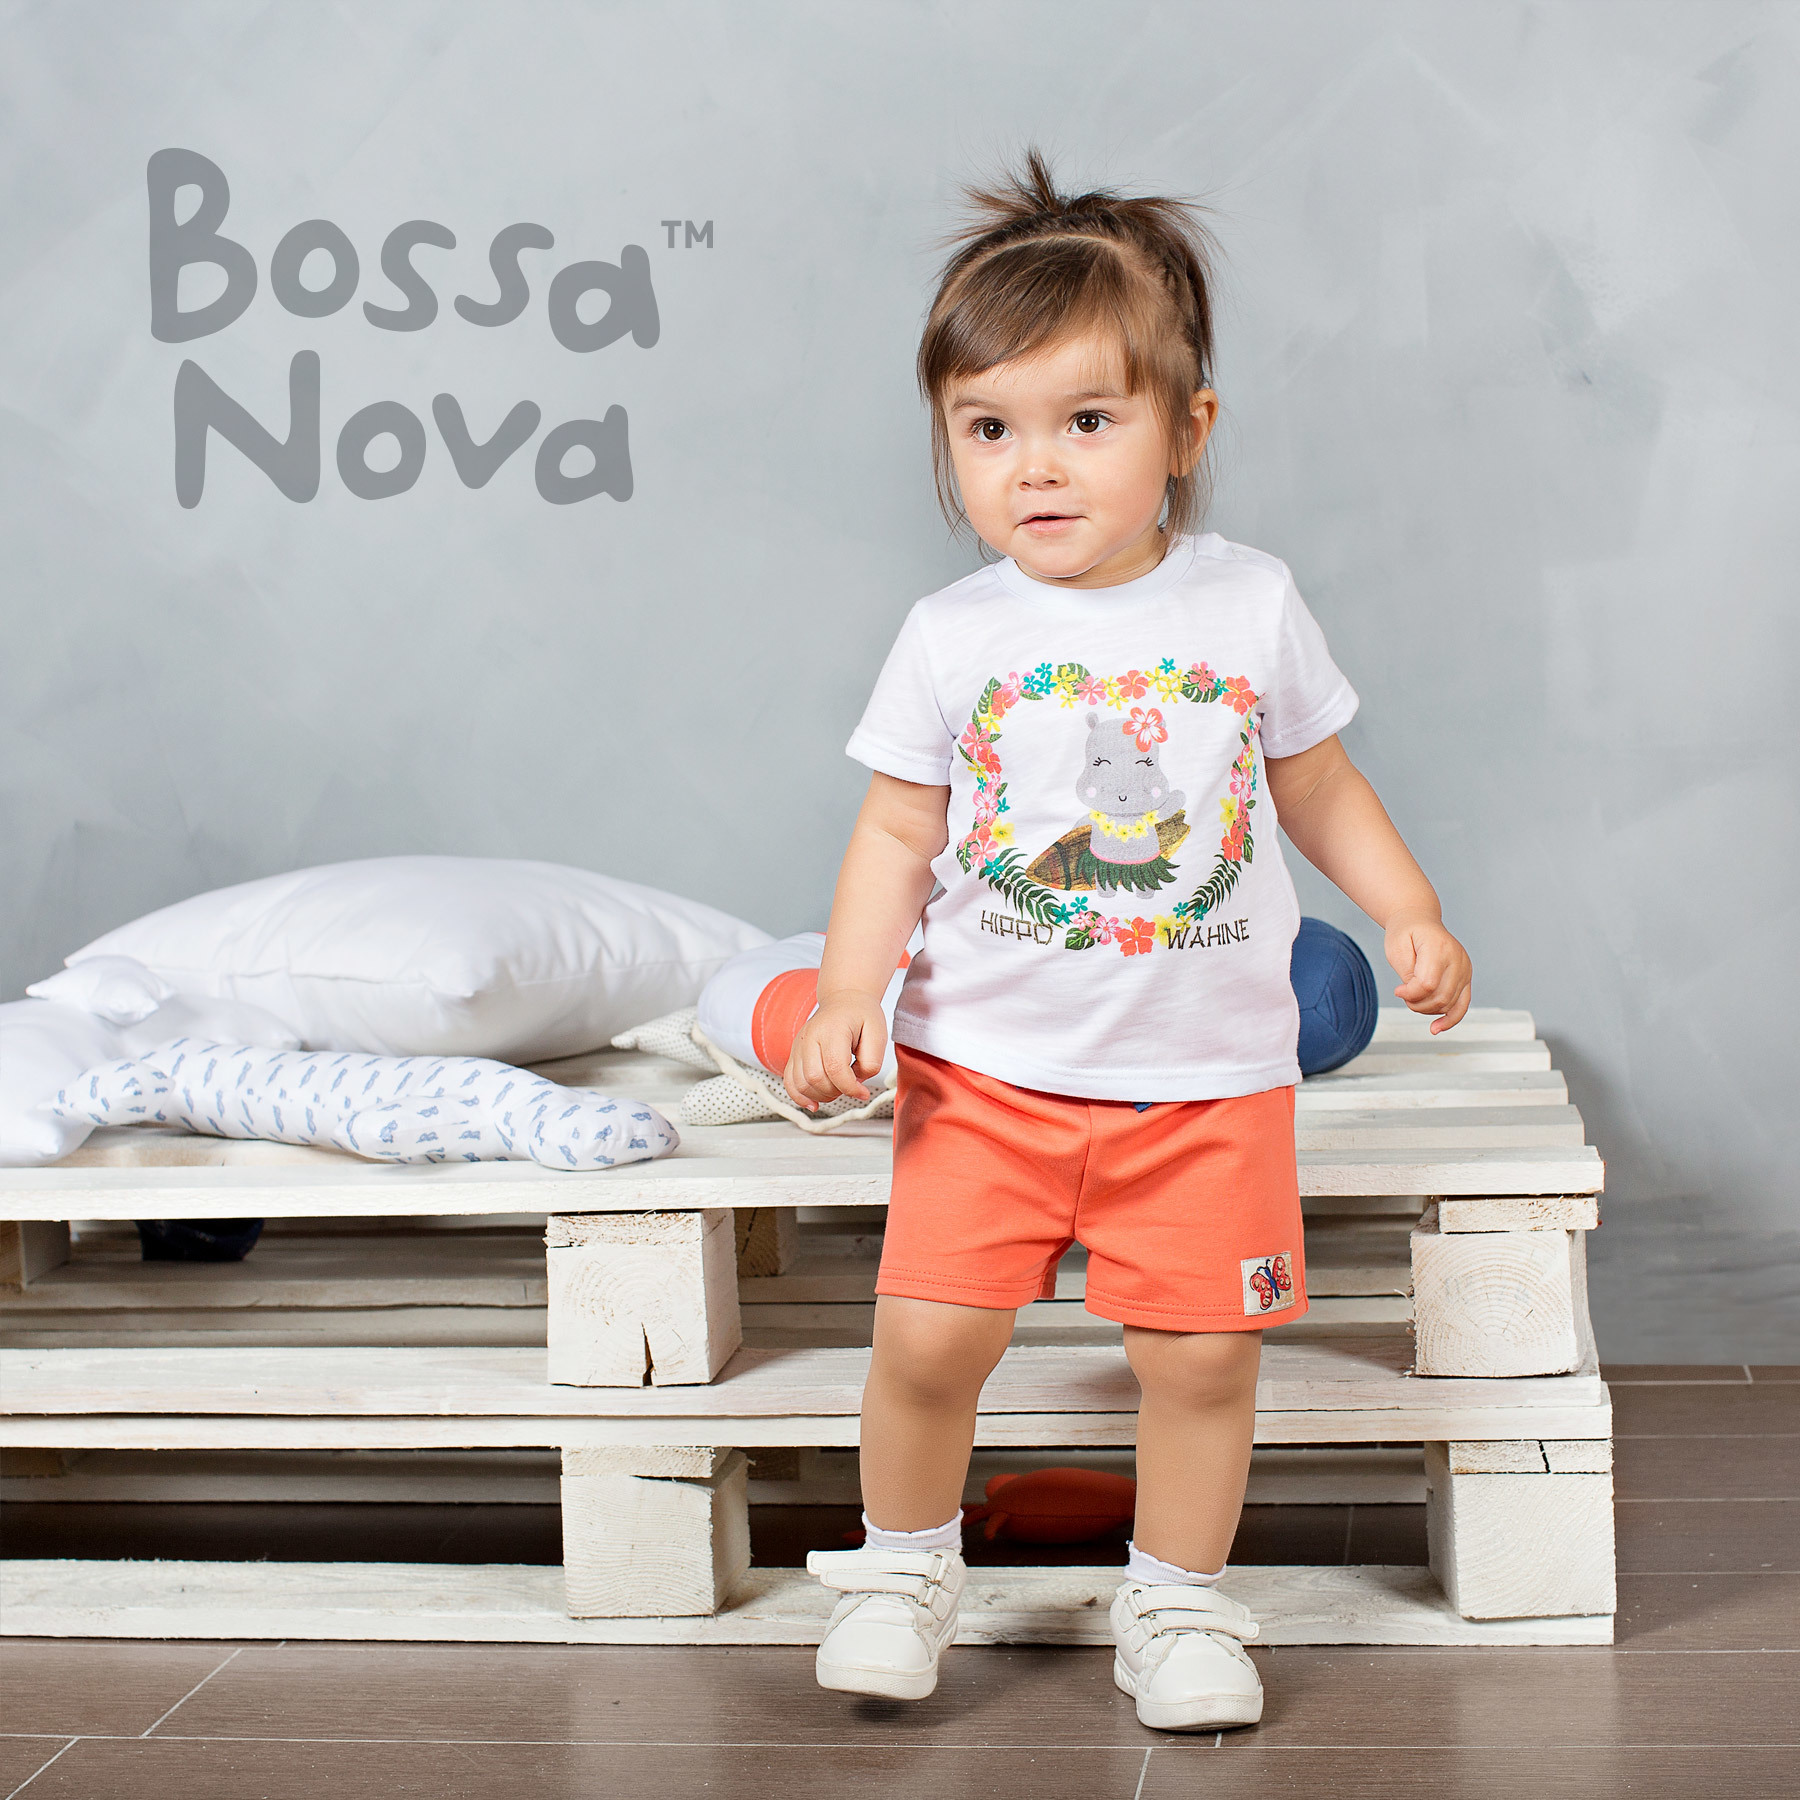 Босса нова это. Bossa Nova одежда. Босса Нова детская одежда. "Детская белая футболка". Шорты для малыша.